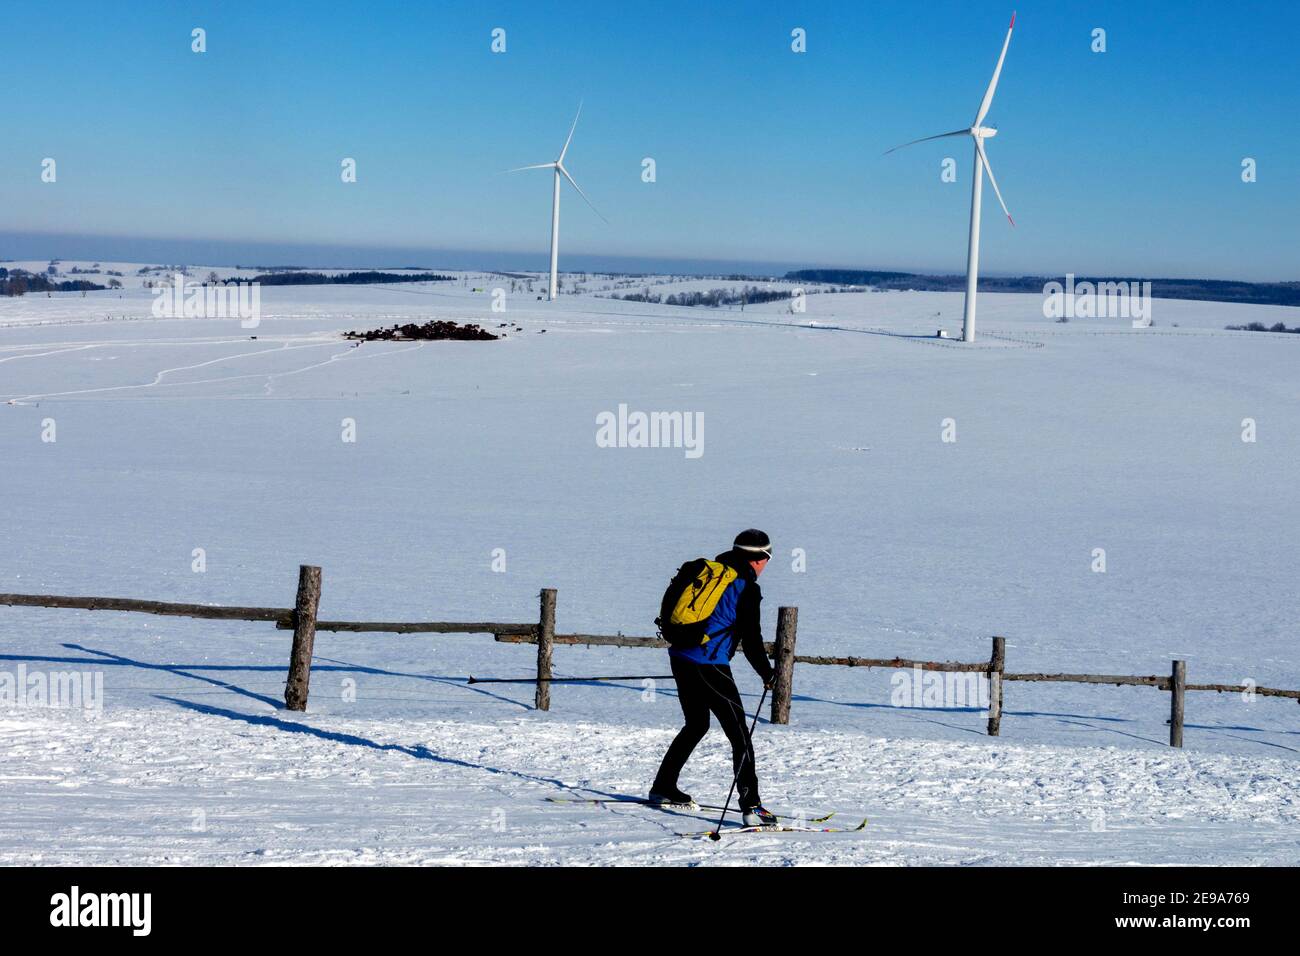 Skieur ski de fond dans un paysage enneigé, deux éoliennes en arrière-plan, frontière entre la République tchèque et l'Allemagne Banque D'Images